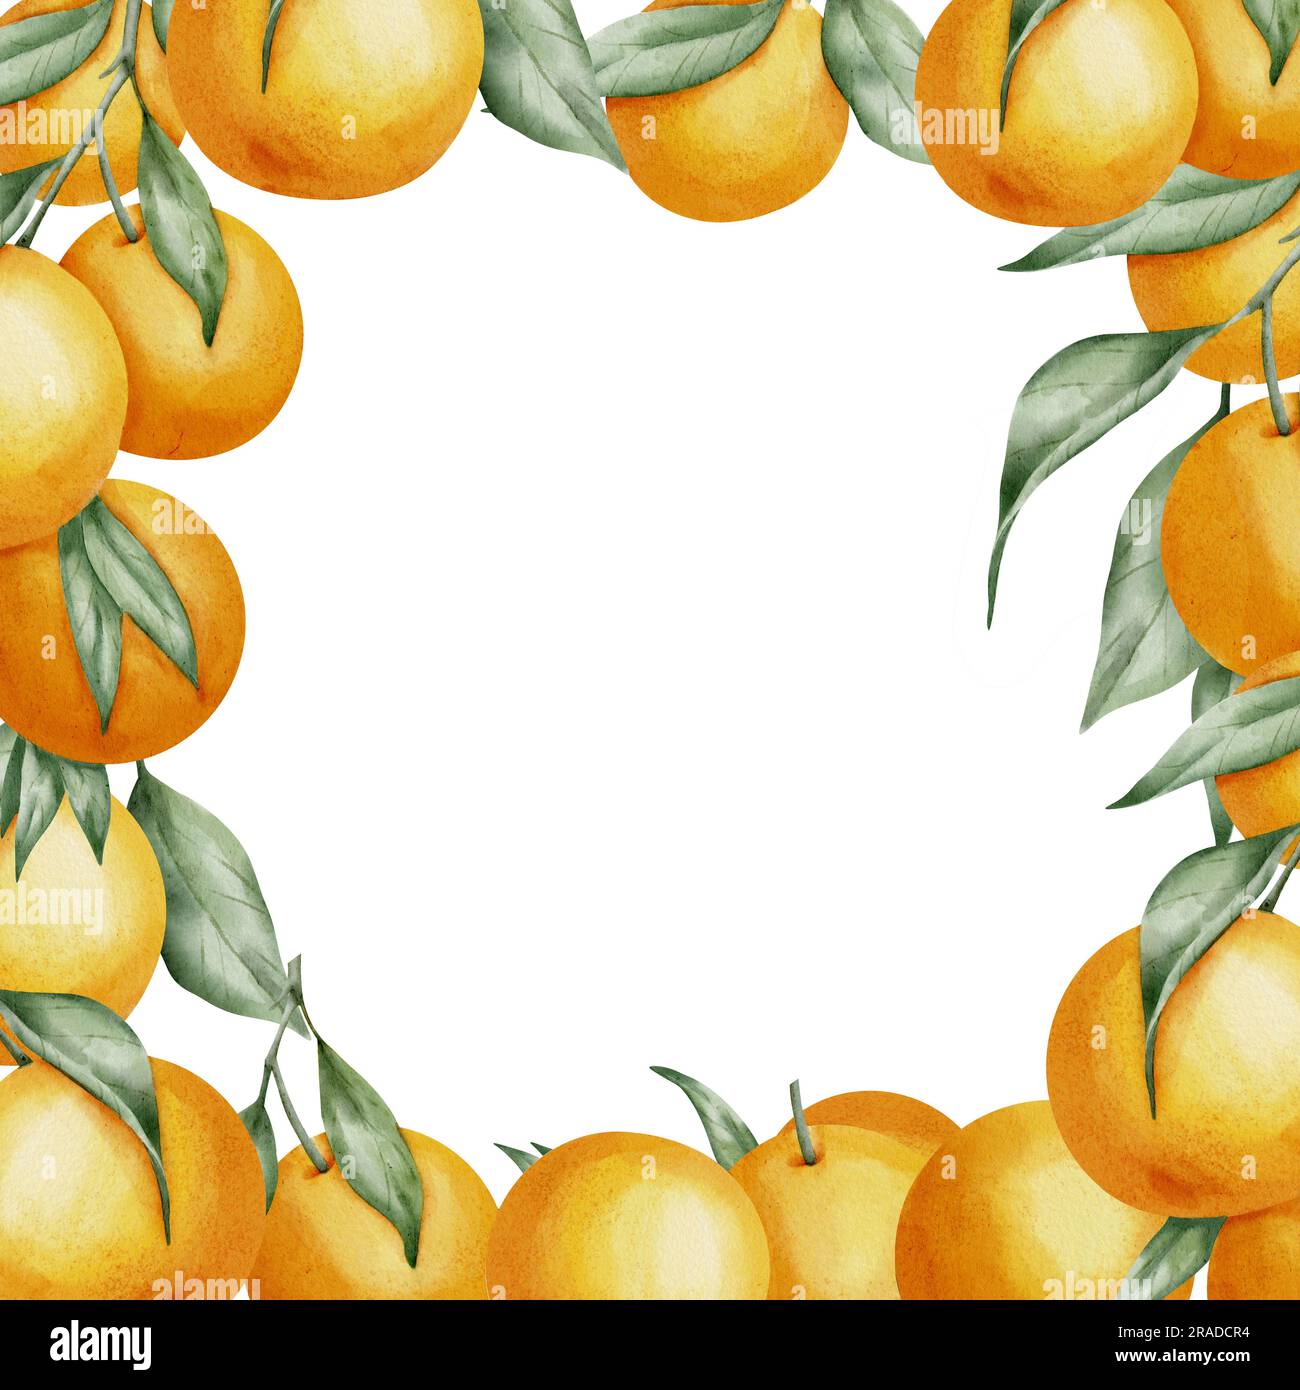 Cadre carré fruits orange. Illustration aquarelle dessinée à la main de la bordure avec des branches de Citrus sur fond blanc isolé. Dessin avec des mandarines et de la clémentine avec des feuilles vertes pour l'icône ou le logo. Banque D'Images